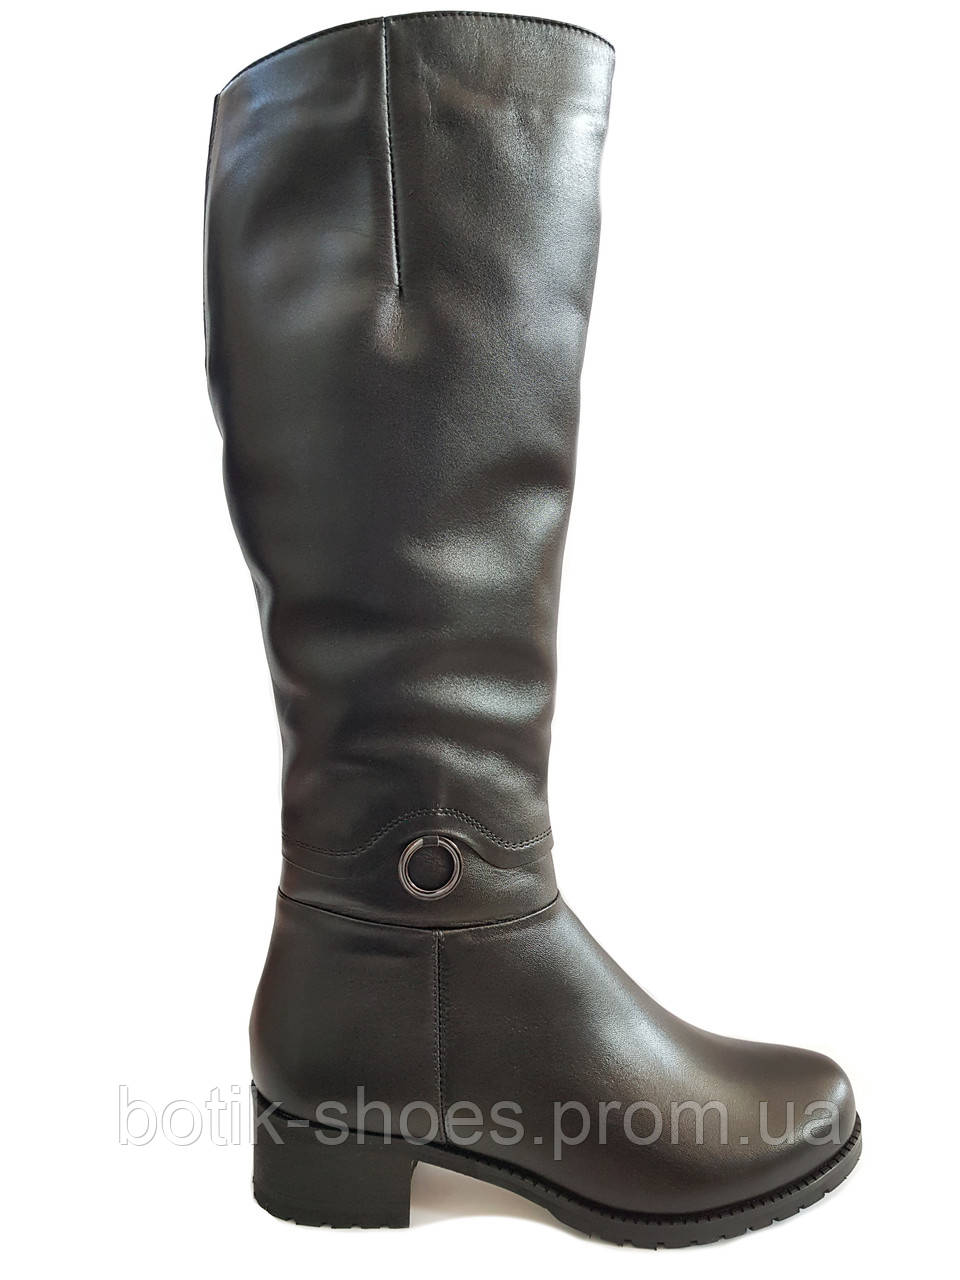 Якісні чоботи зимові жіночі шкіряні на низькому каблуці зручні повсякденні комфорт теплі класичні чорні 36 розміру Romax 5400 2023